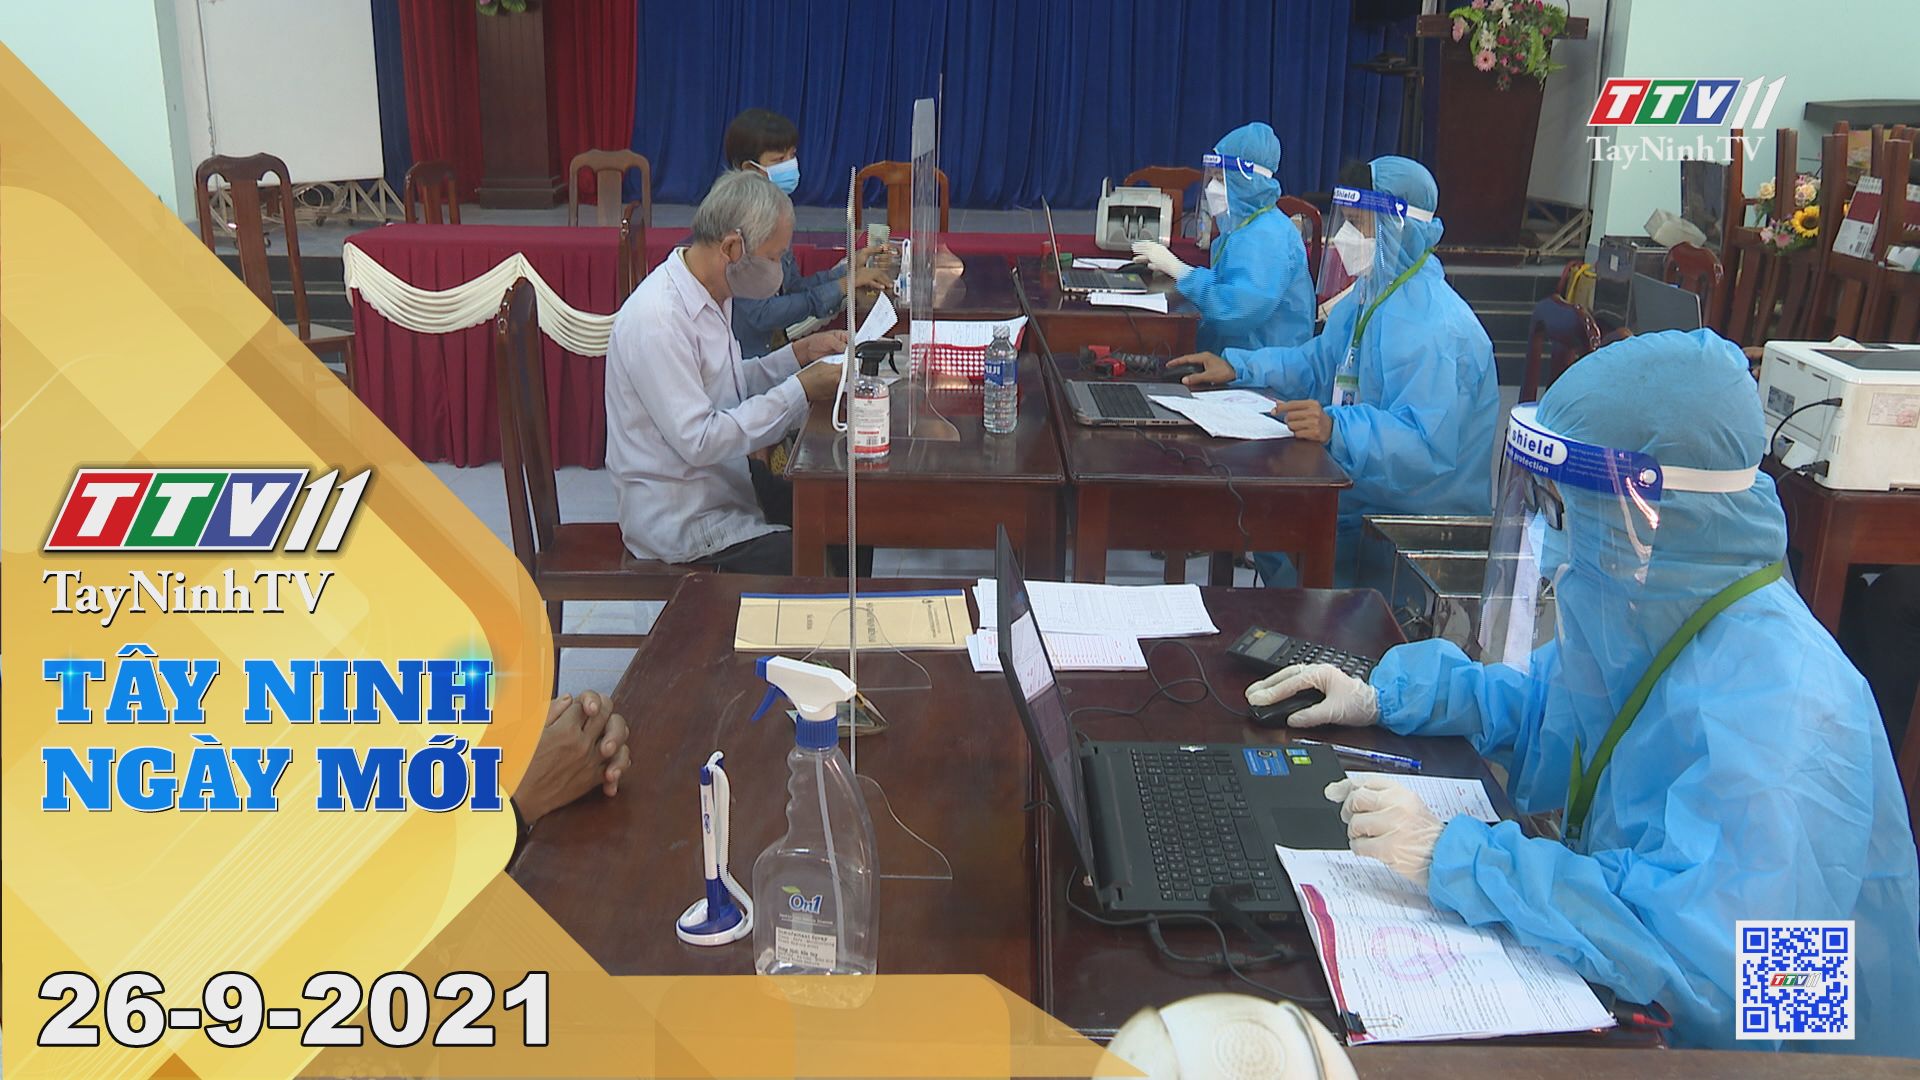 Tây Ninh Ngày Mới 26/9/2021 | Tin tức hôm nay | TayNinhTV